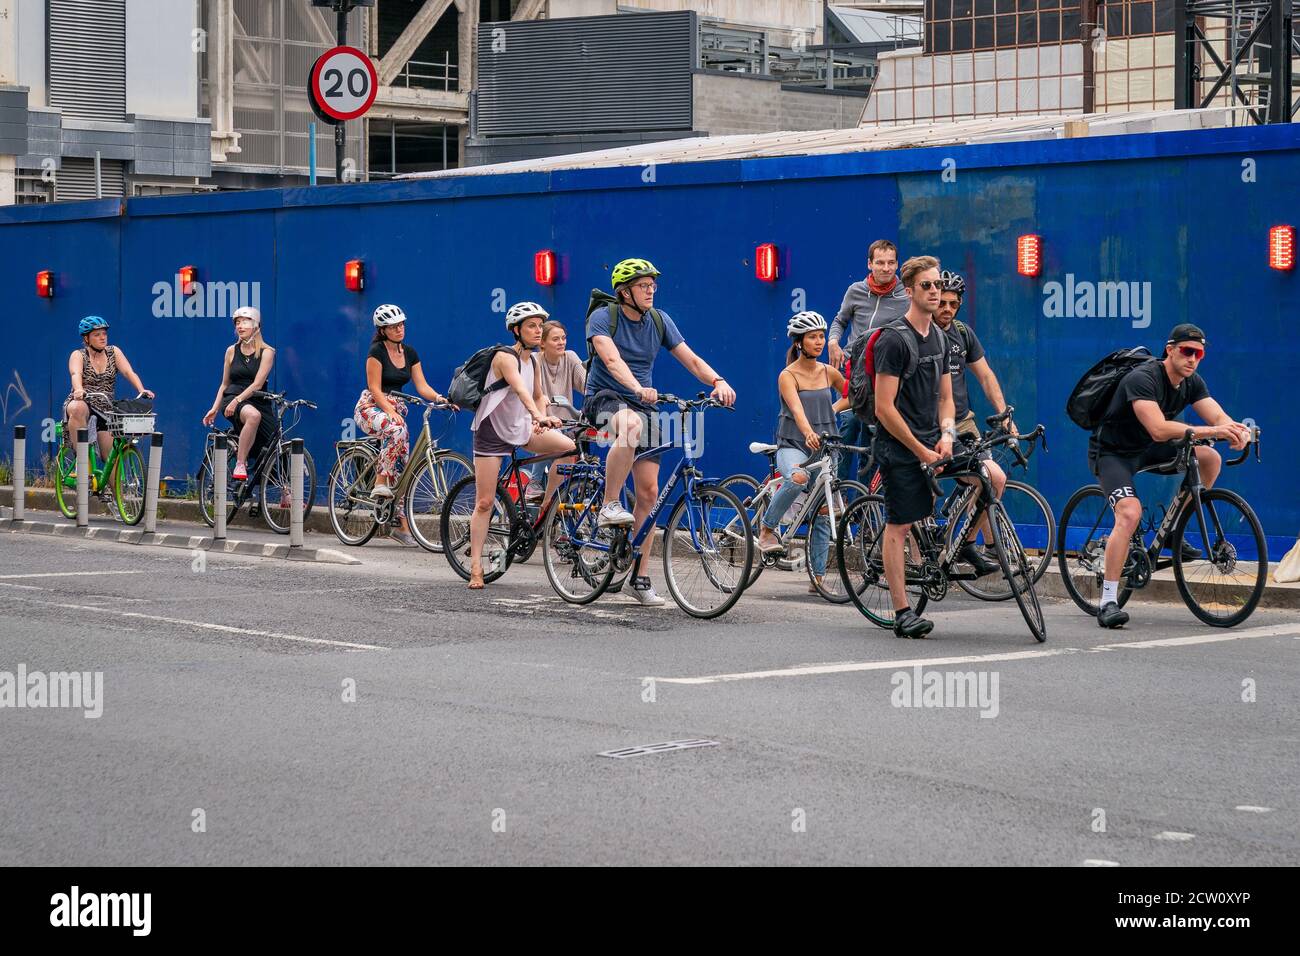 LONDON, ENGLAND - 24. JULI 2020: Eine Gruppe von Pendlerfahrern mit Sturzhelmen wartet an der Ampel auf einer Fahrradautobahn in Farrindon, Lond Stockfoto